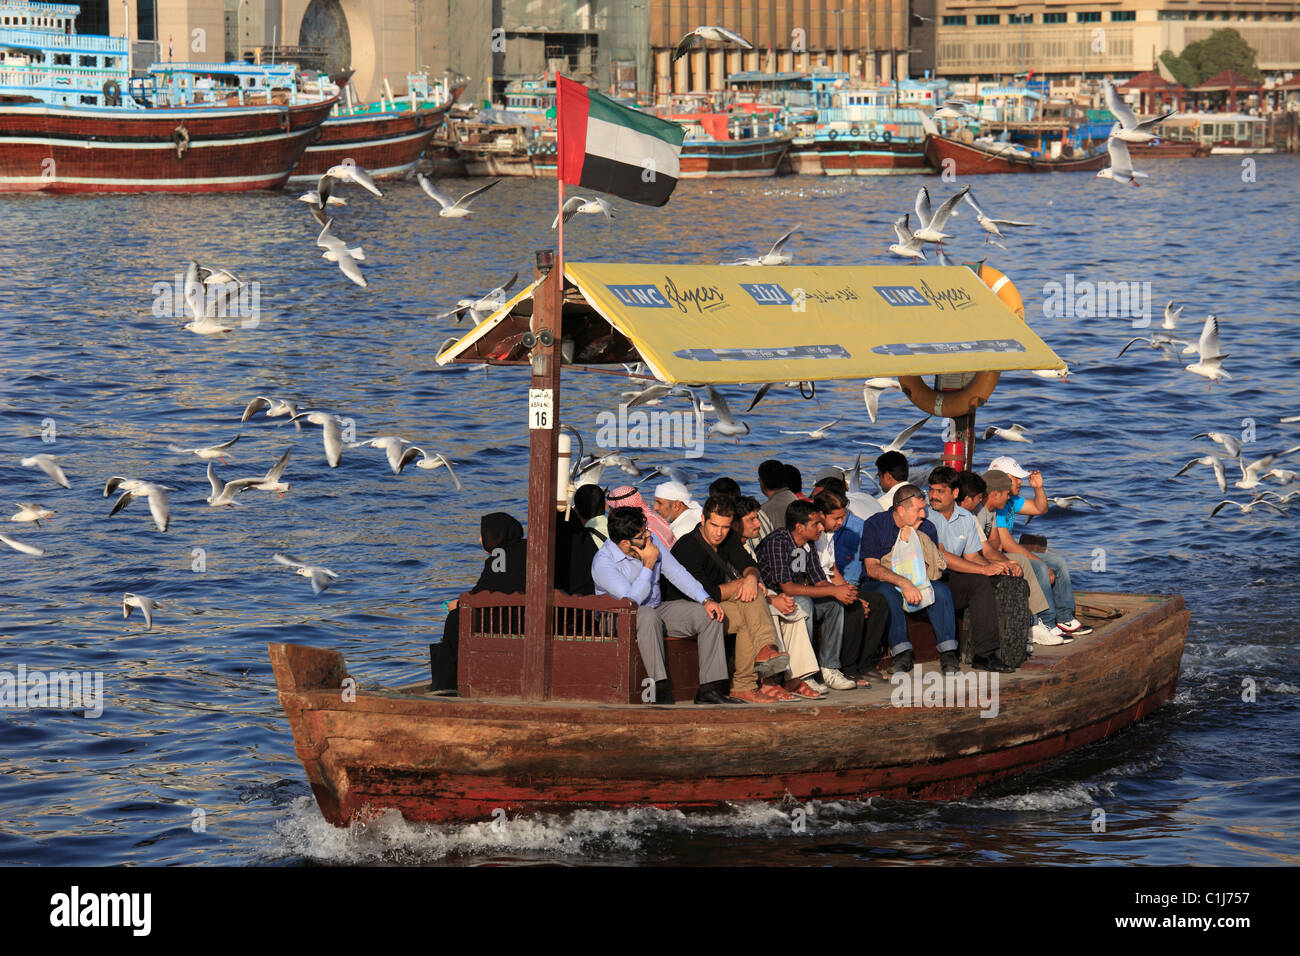 Emirats arabes unis, dubaï, ruisseau, abra, bateau Banque D'Images